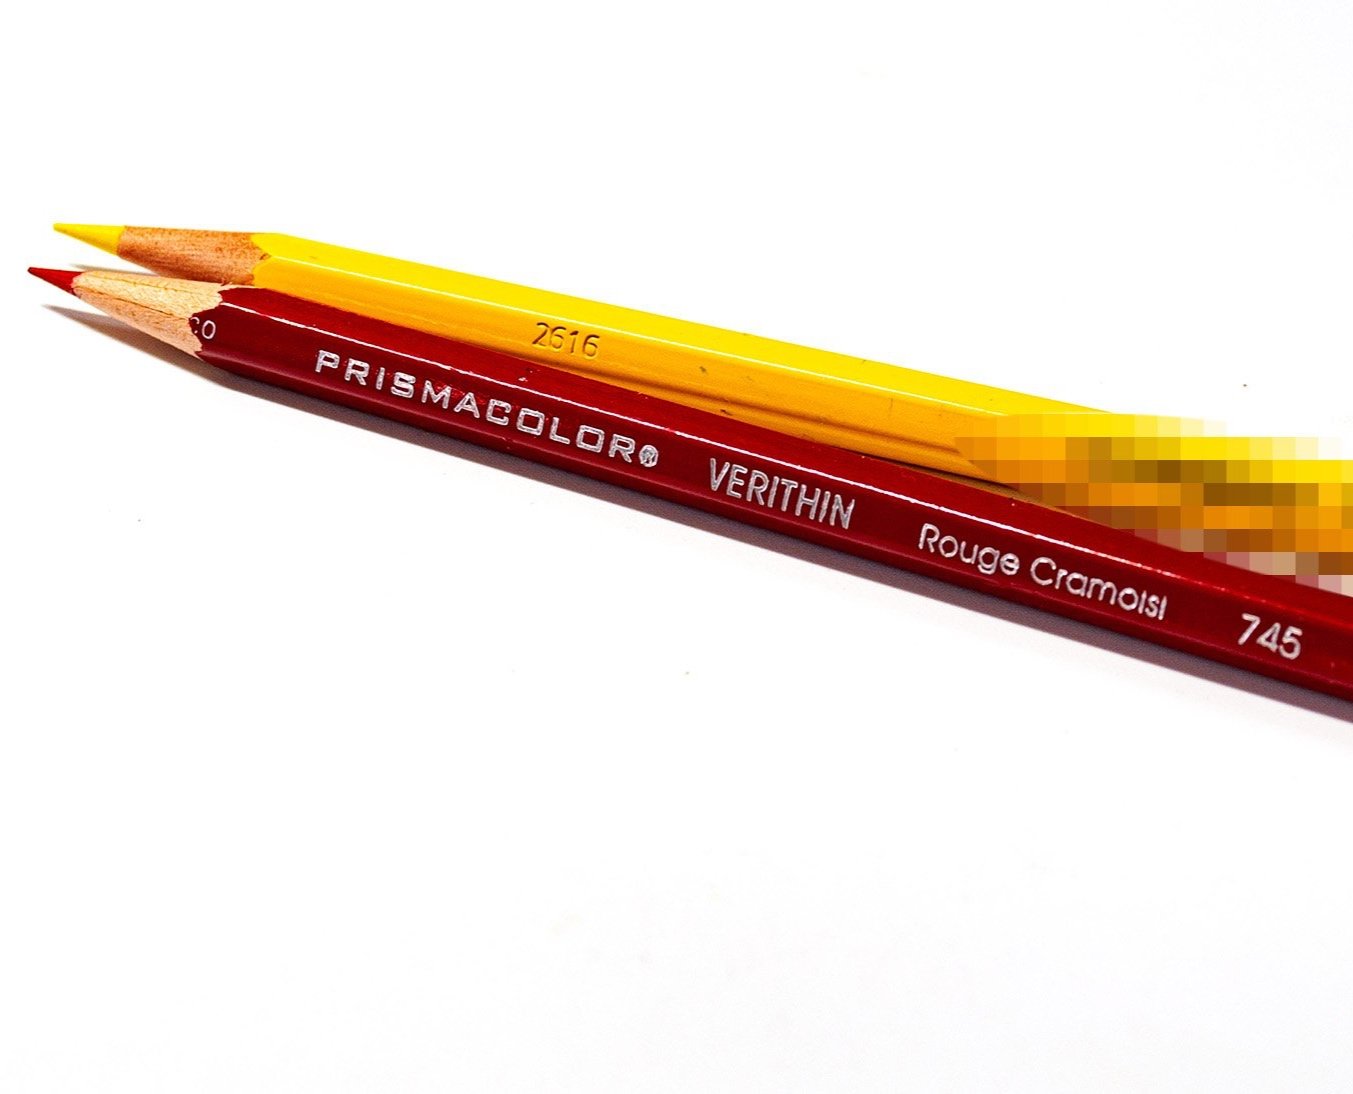 Pretty good deal on Prismacolor colored pencils. : r/Costco